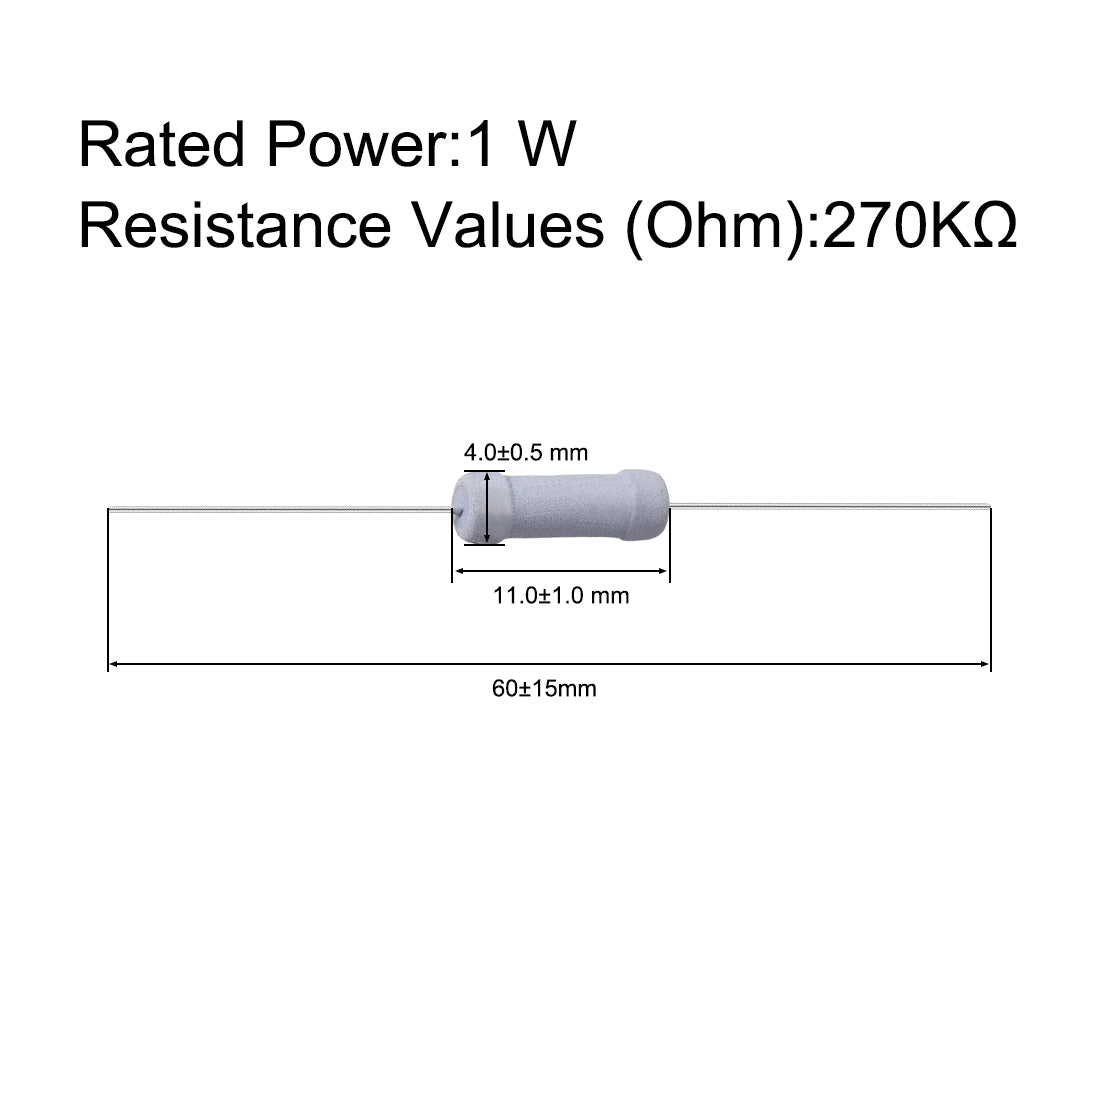 uxcell Uxcell 100 Pcs 1W 1 Watt Metal Oxide Film Resistor Axile Lead 270K Ohm ±5% Tolerance